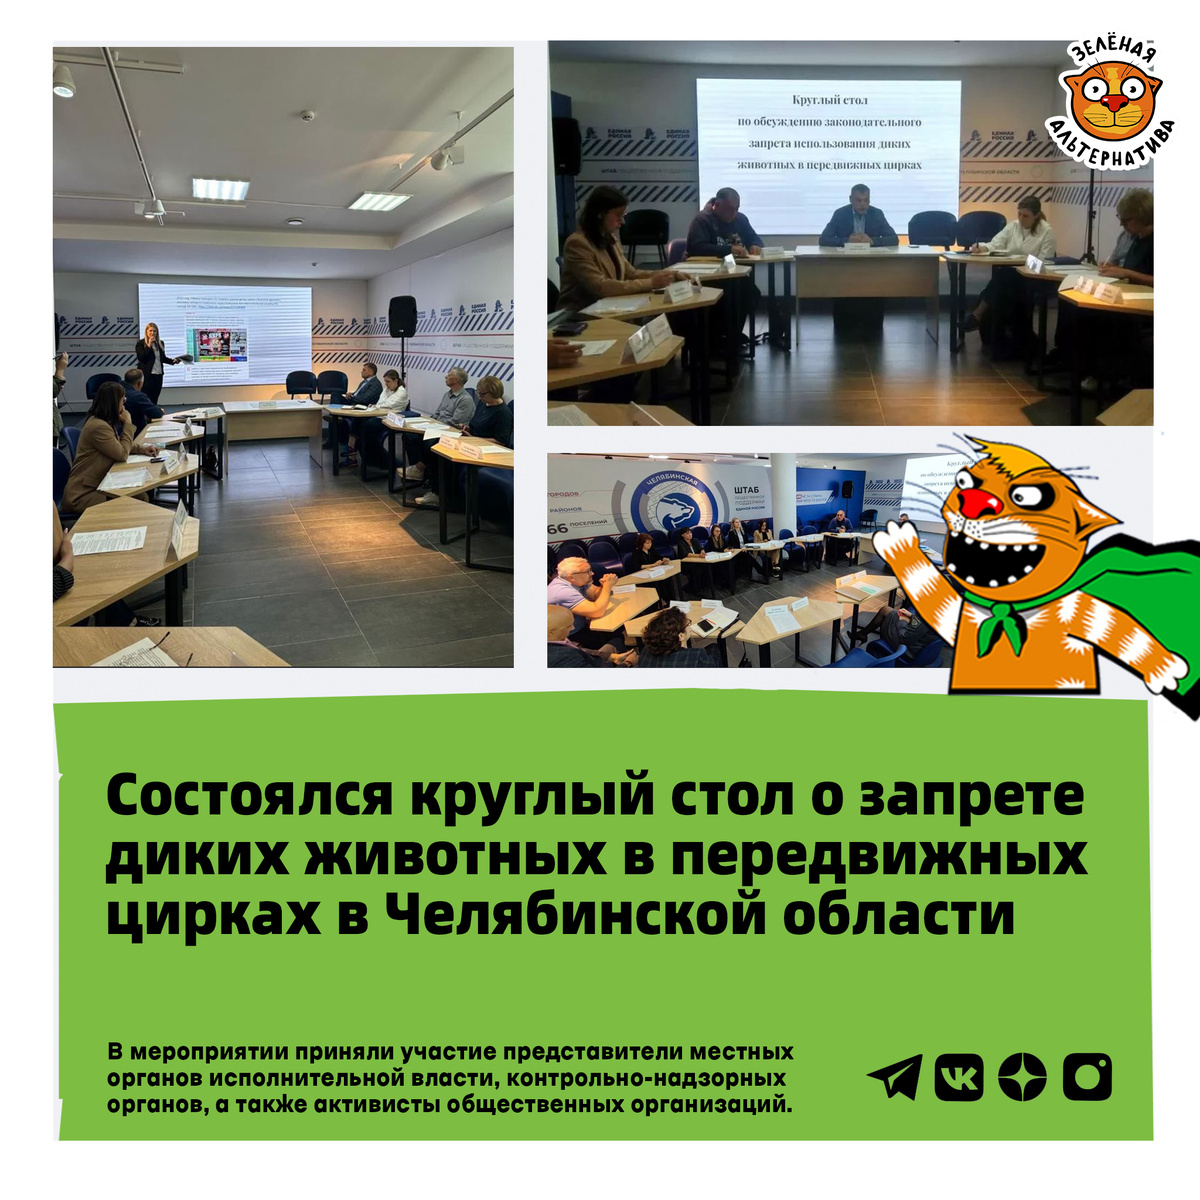 В Челябинске состоялся круглый стол, посвящённый запрету на территории региона эксплуатации диких зверей в представлениях передвижных шапито.